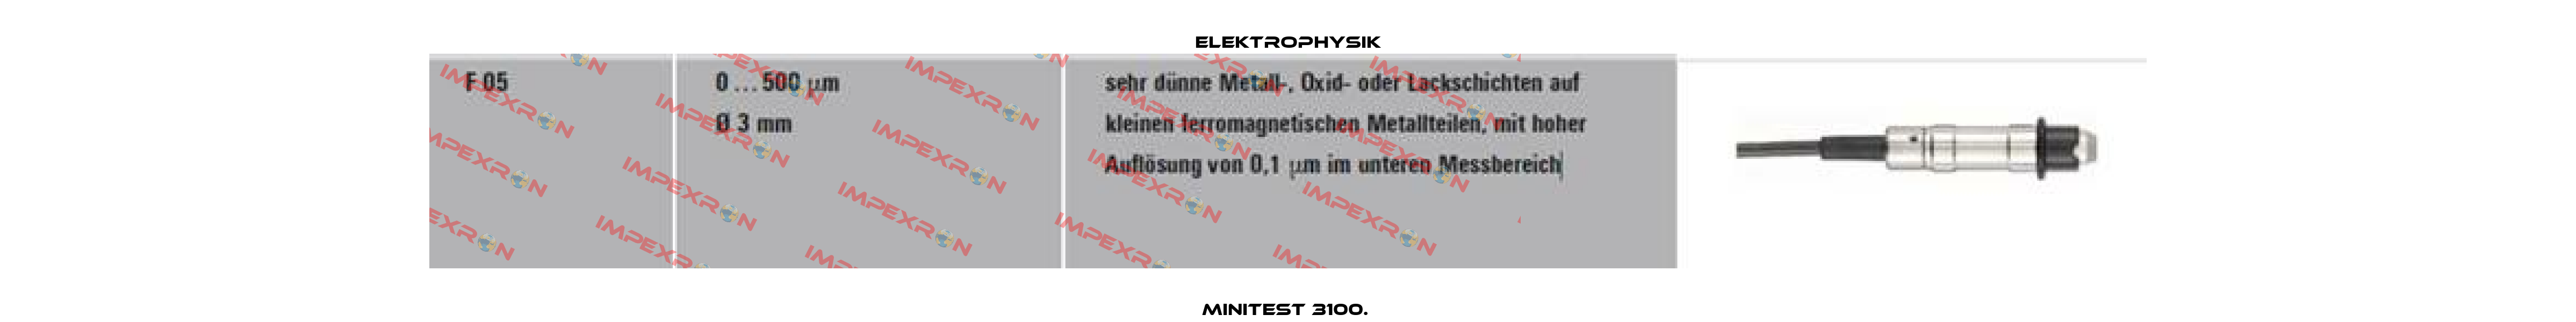 MiniTest 3100.  ElektroPhysik